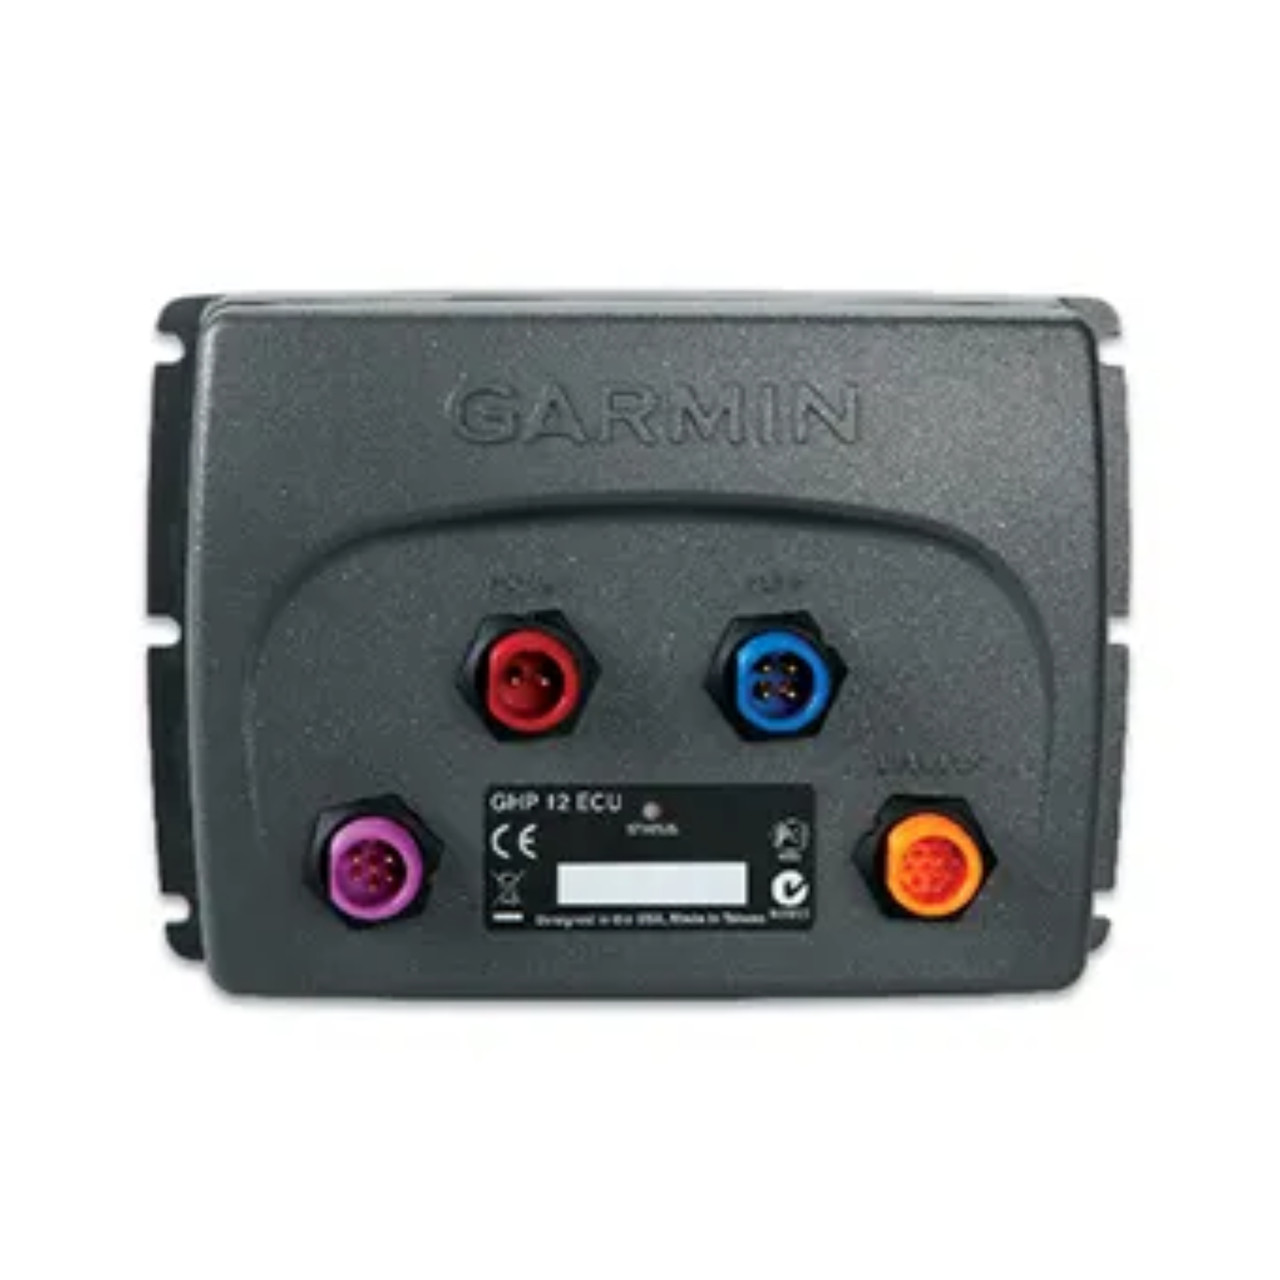 Garmin New OEM ECU for GHP 12, 010-11053-30